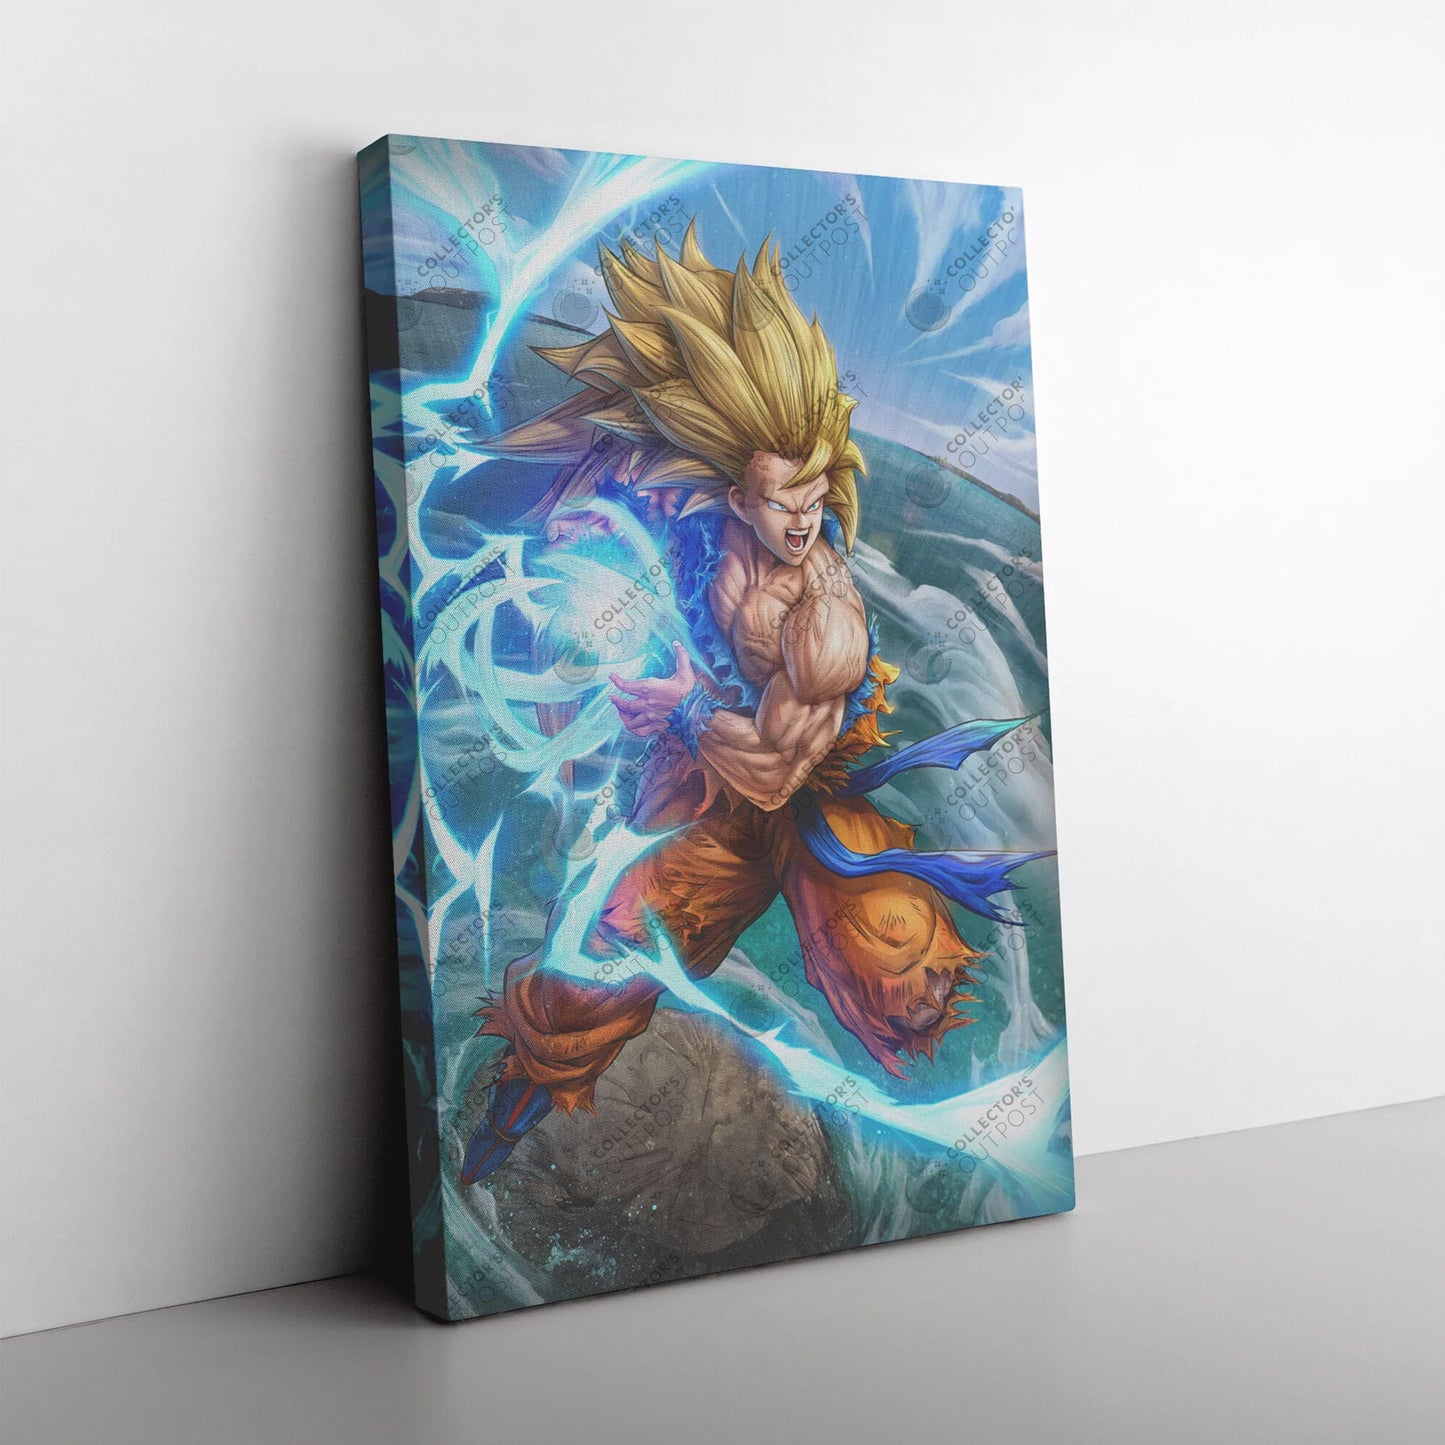 Dragon Ball Kid Goku Poster - The Comic Book Store